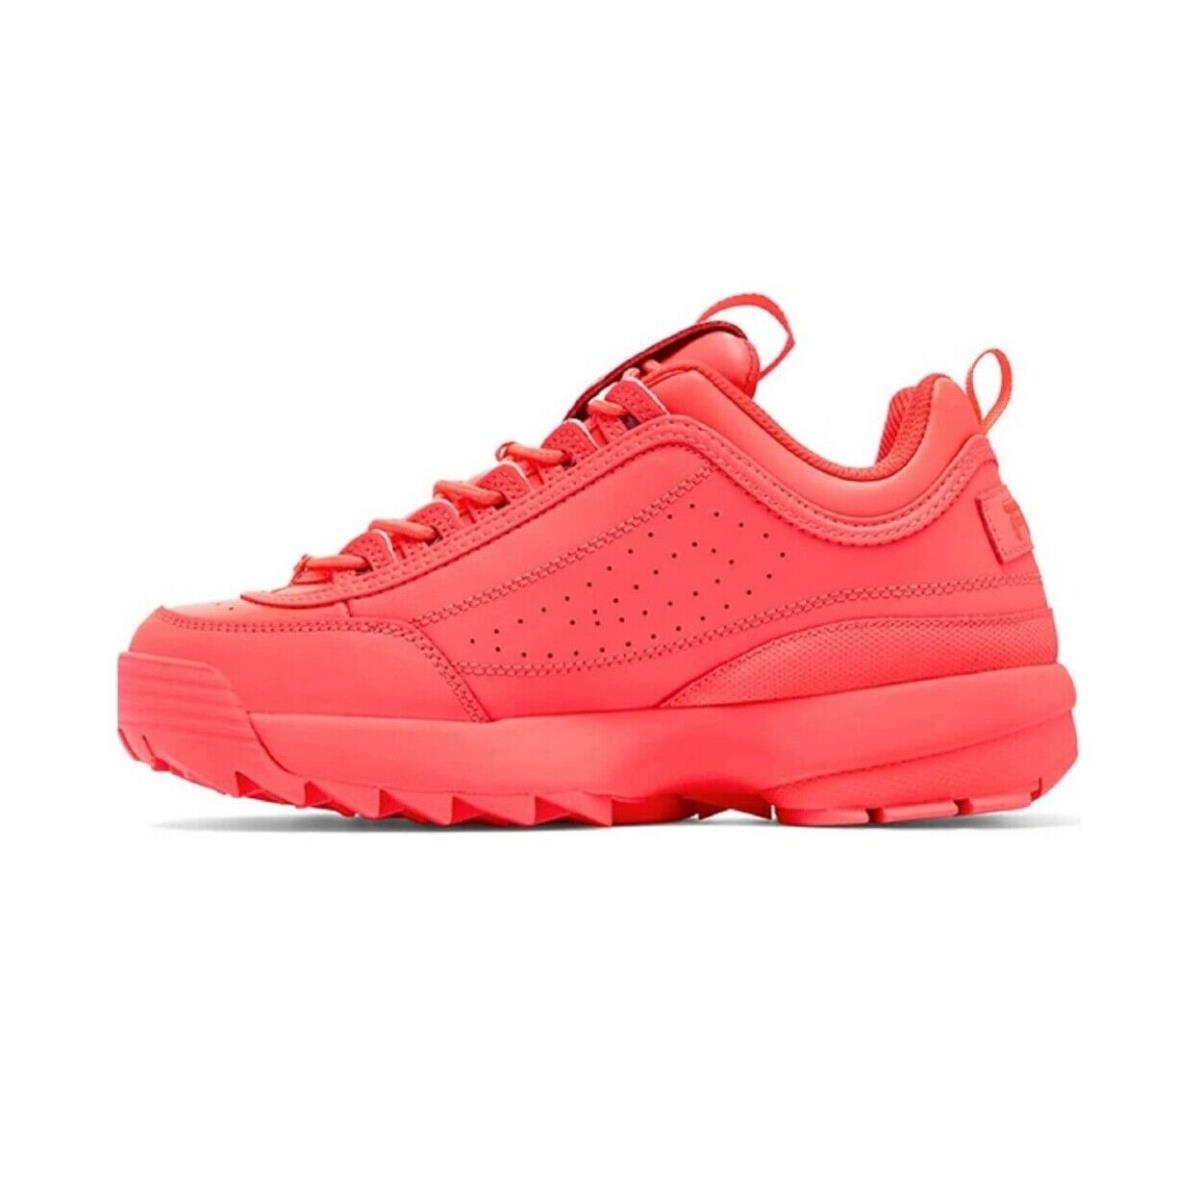 Fila Womens Disruptor Ii Sneaker 0 Fiery Coral/fiery Coral/fiery Coral